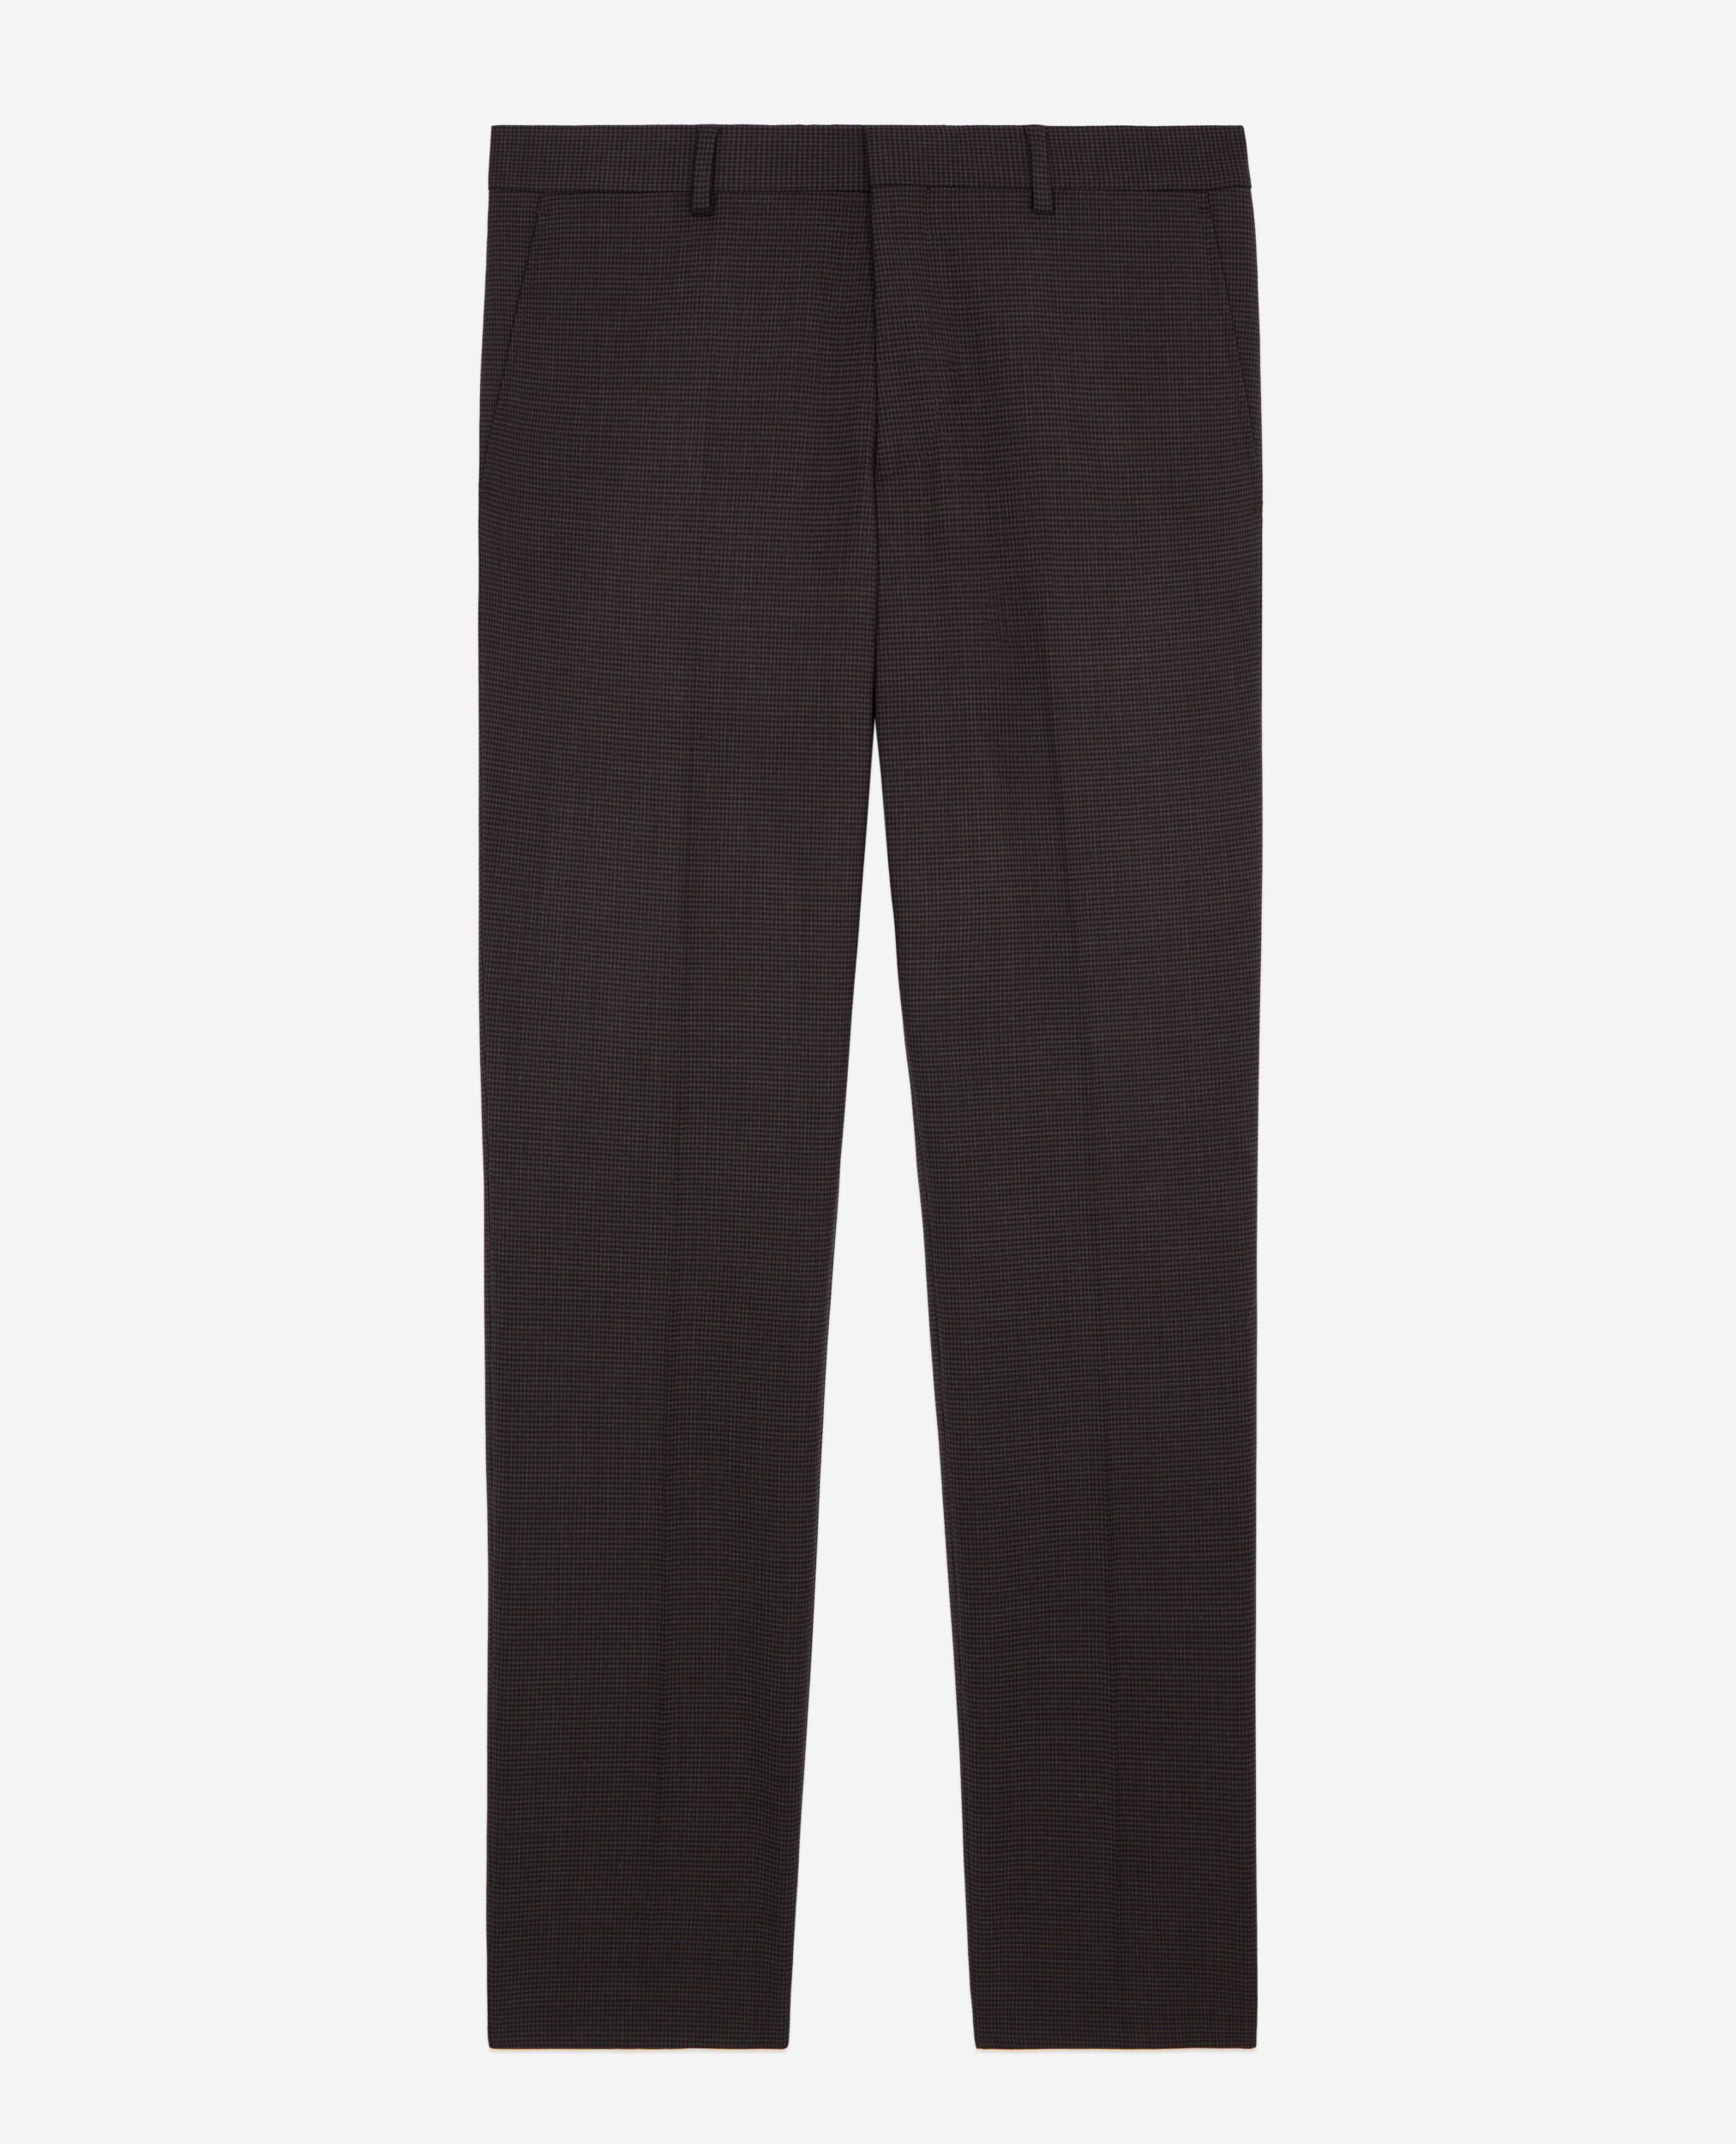 Pantalon de costume pied de poule marron en laine, BROWN / BLACK, hi-res image number null